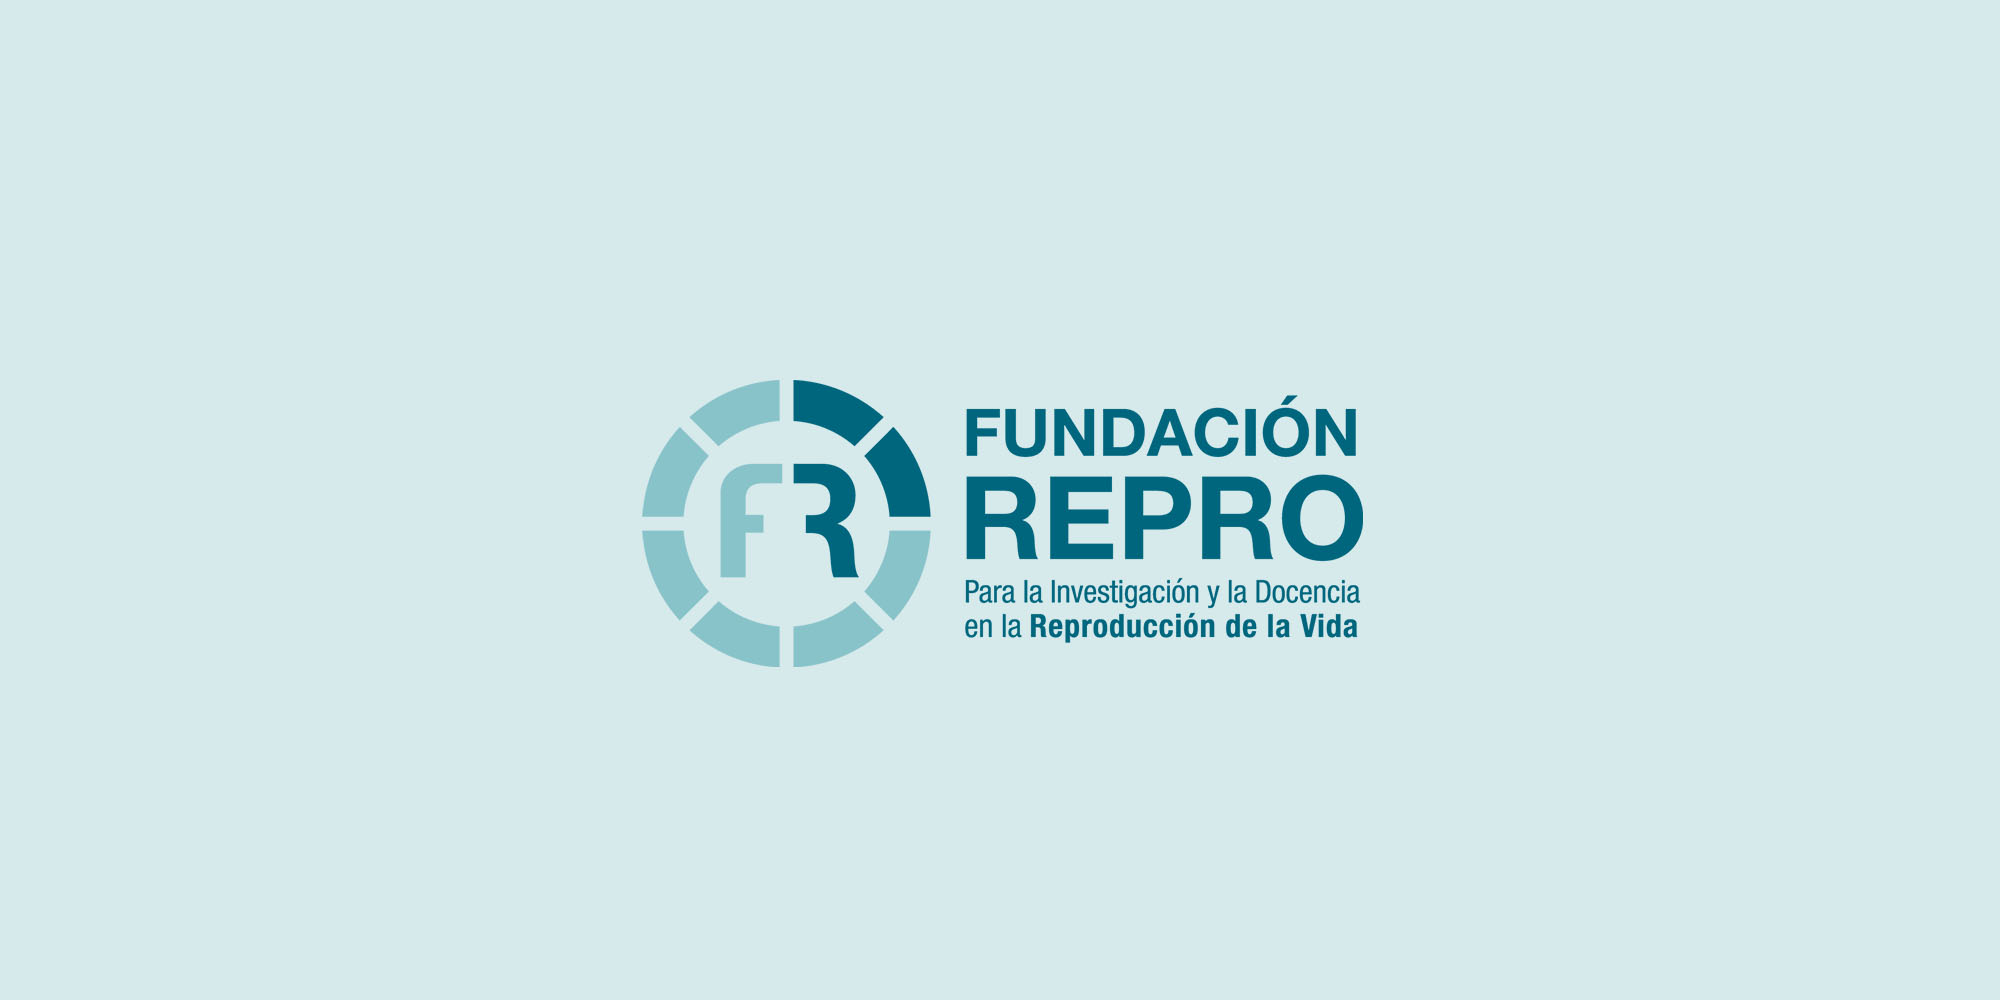 Ley de Reproducción asistida: Carta abierta a la Sra. Presidenta Cristina Fernández de Kirchner